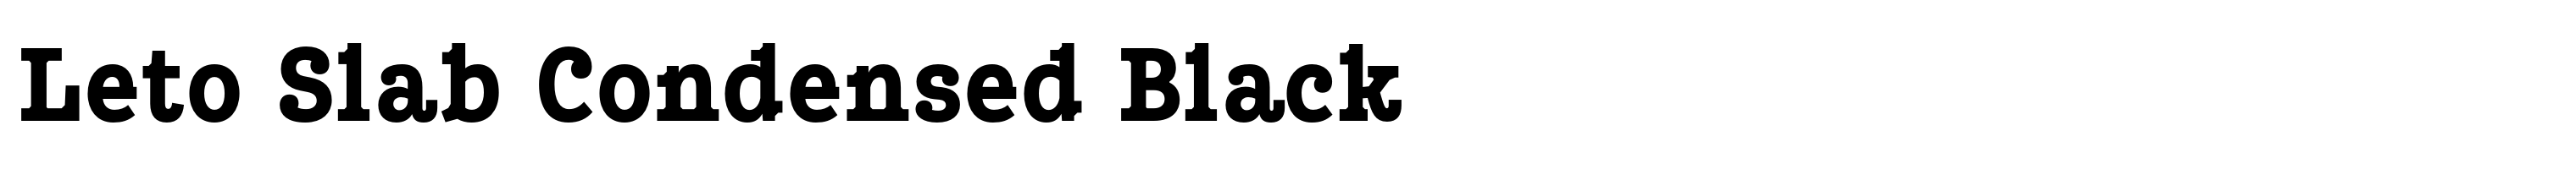 Leto Slab Condensed Black